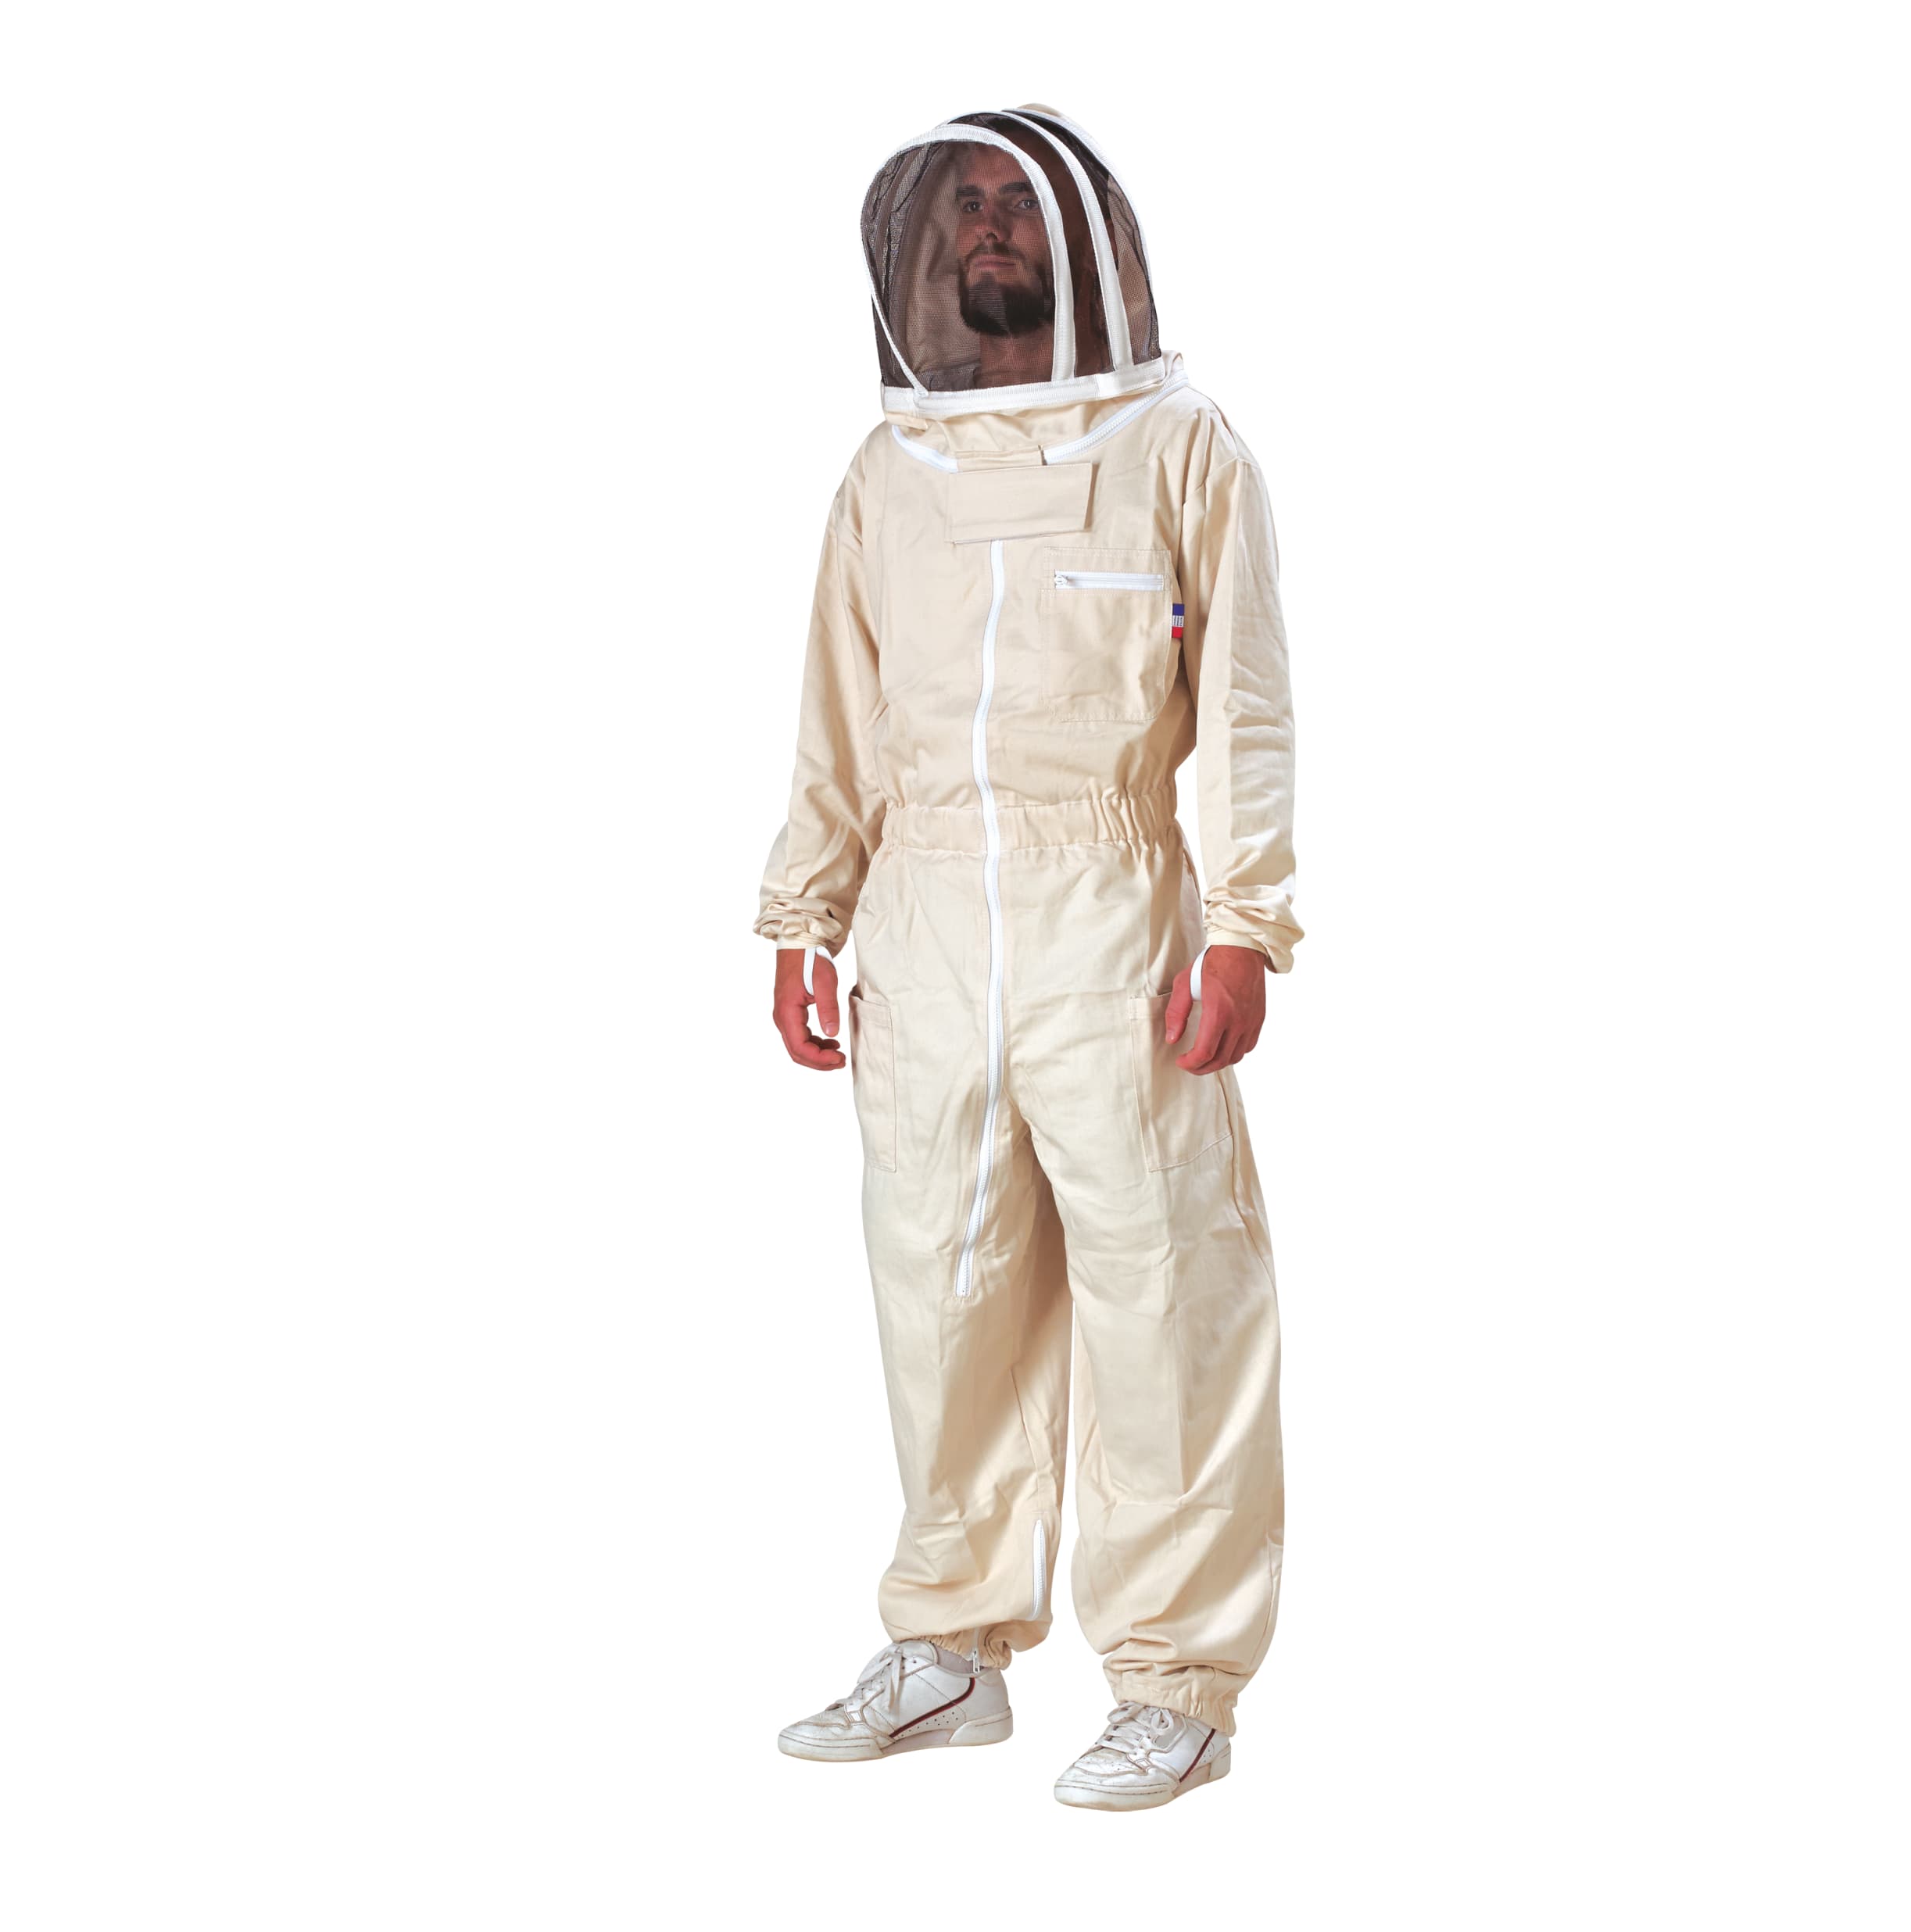 HOTEU Blouse Costume Équipement de Protection avec Chapeau Professionnel Anti Abeille pour Apiculture Apiculteur 